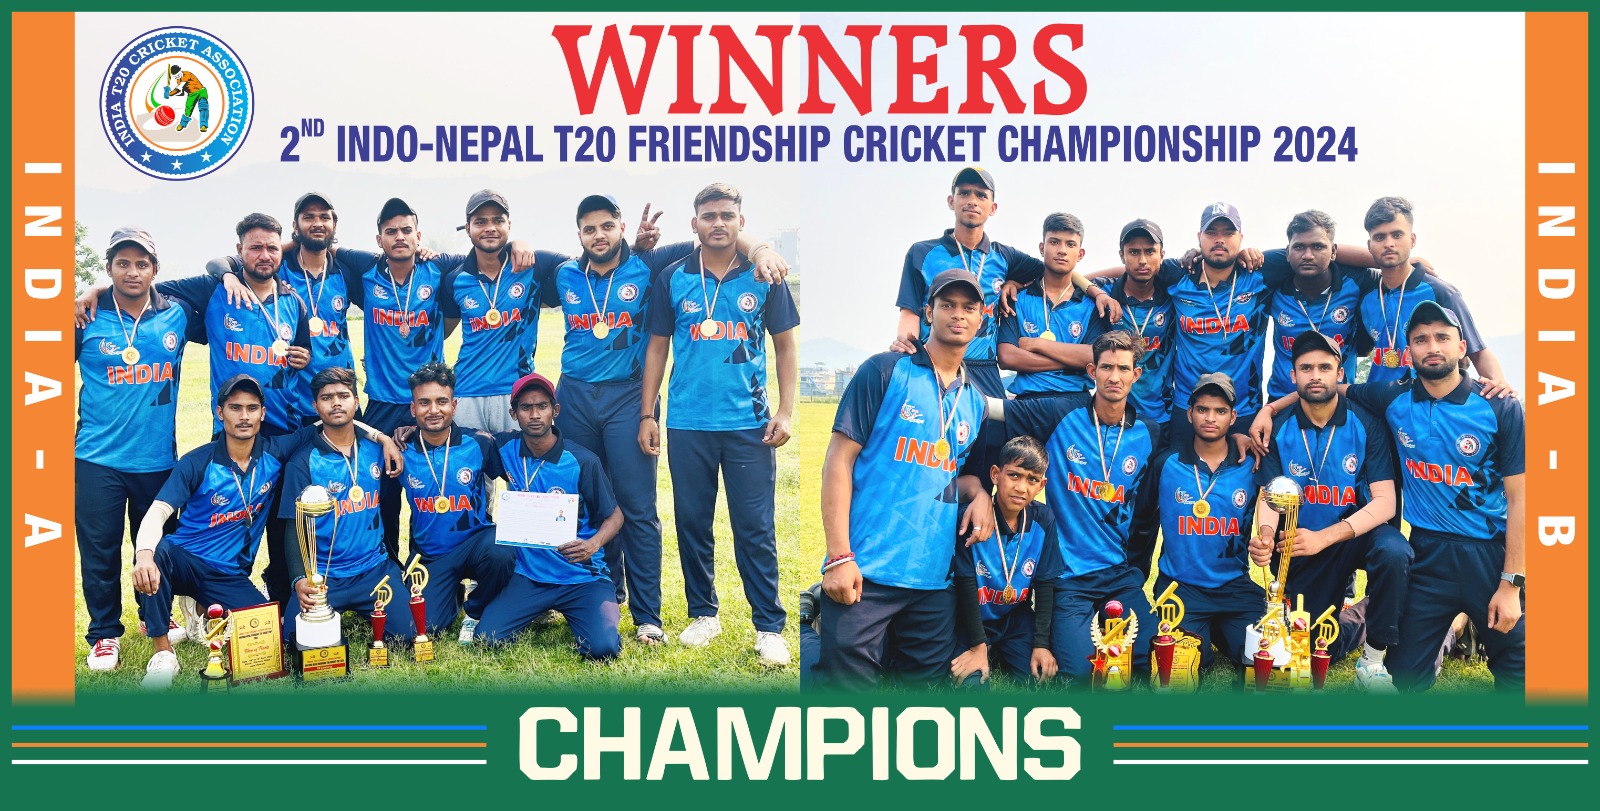 भारत के जांबाज खिलाड़ियों ने नेपाल को दी मात ..और इंडो नेपाल क्रिकेट सीरीज की अपने नाम…